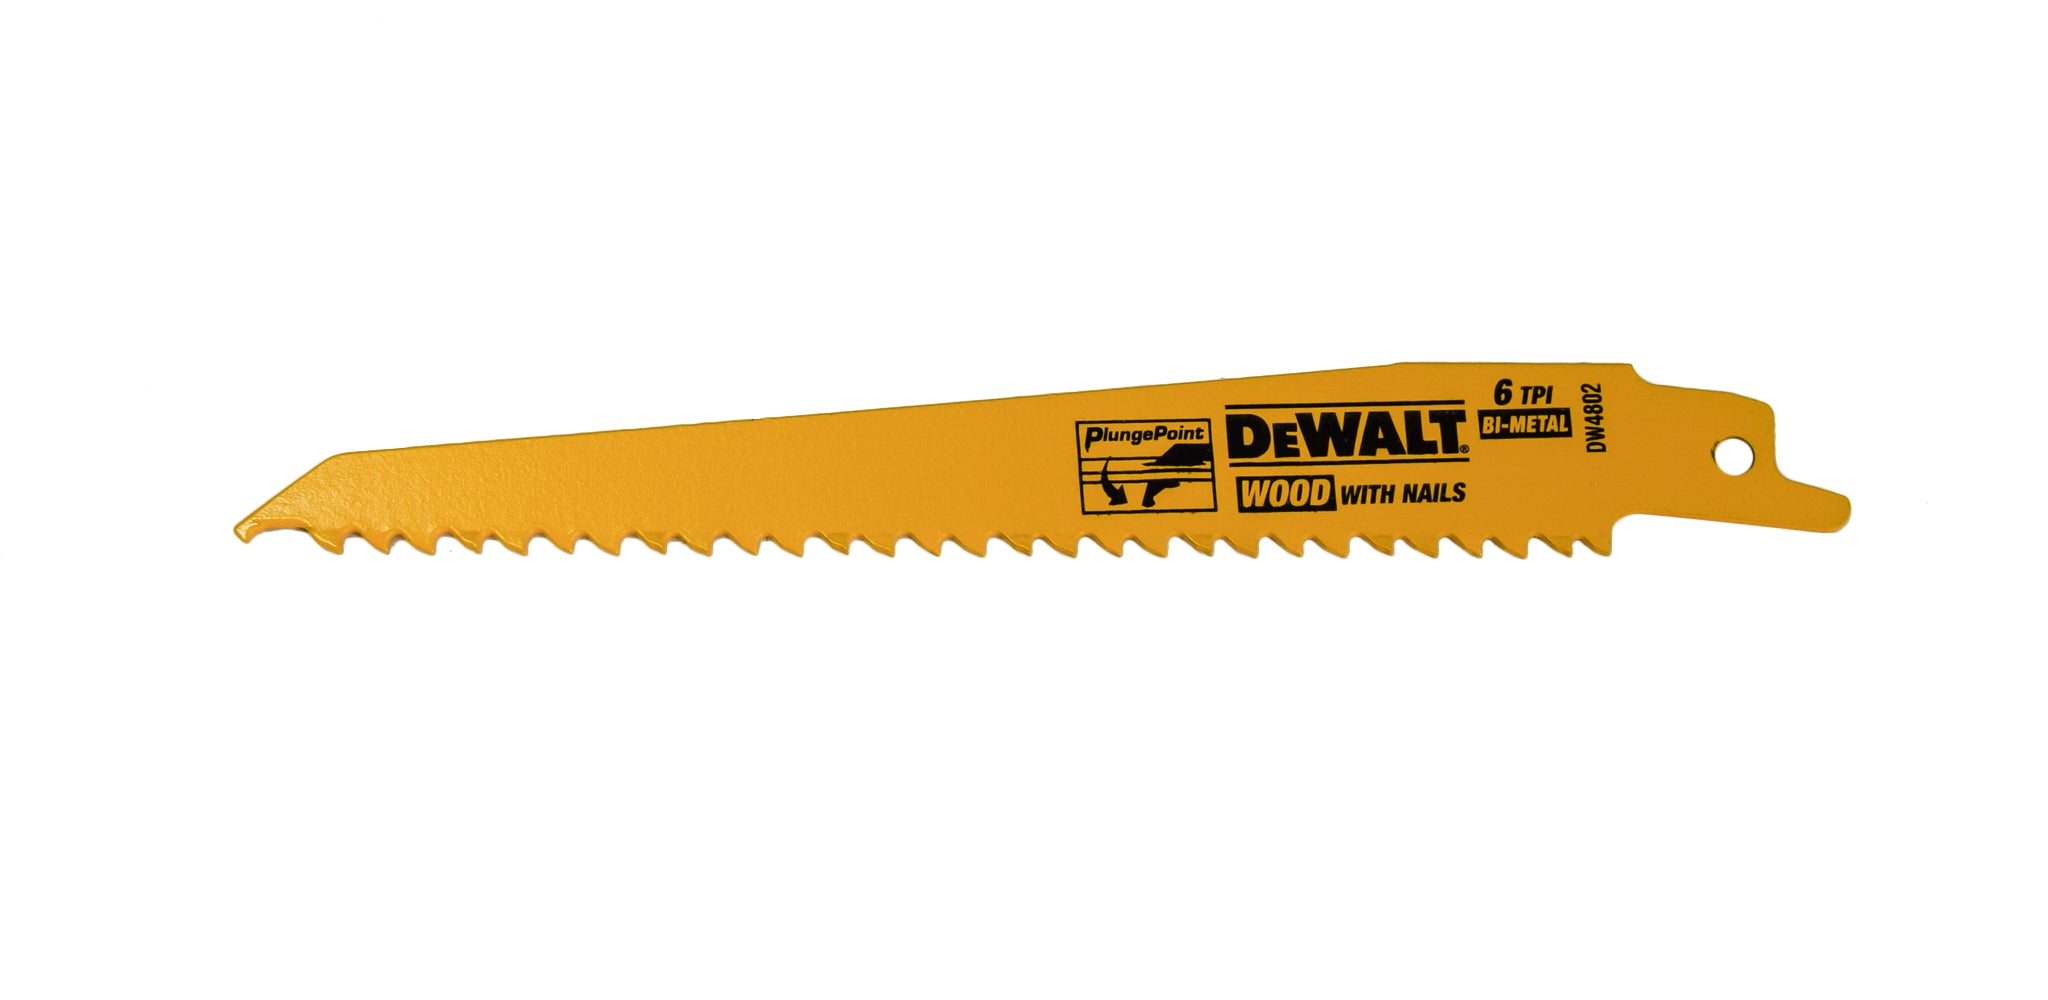 Dewalt DCS386B Flexvolt Advantage 20V MAX Reciprocating Saw, Cordless, Tool Only